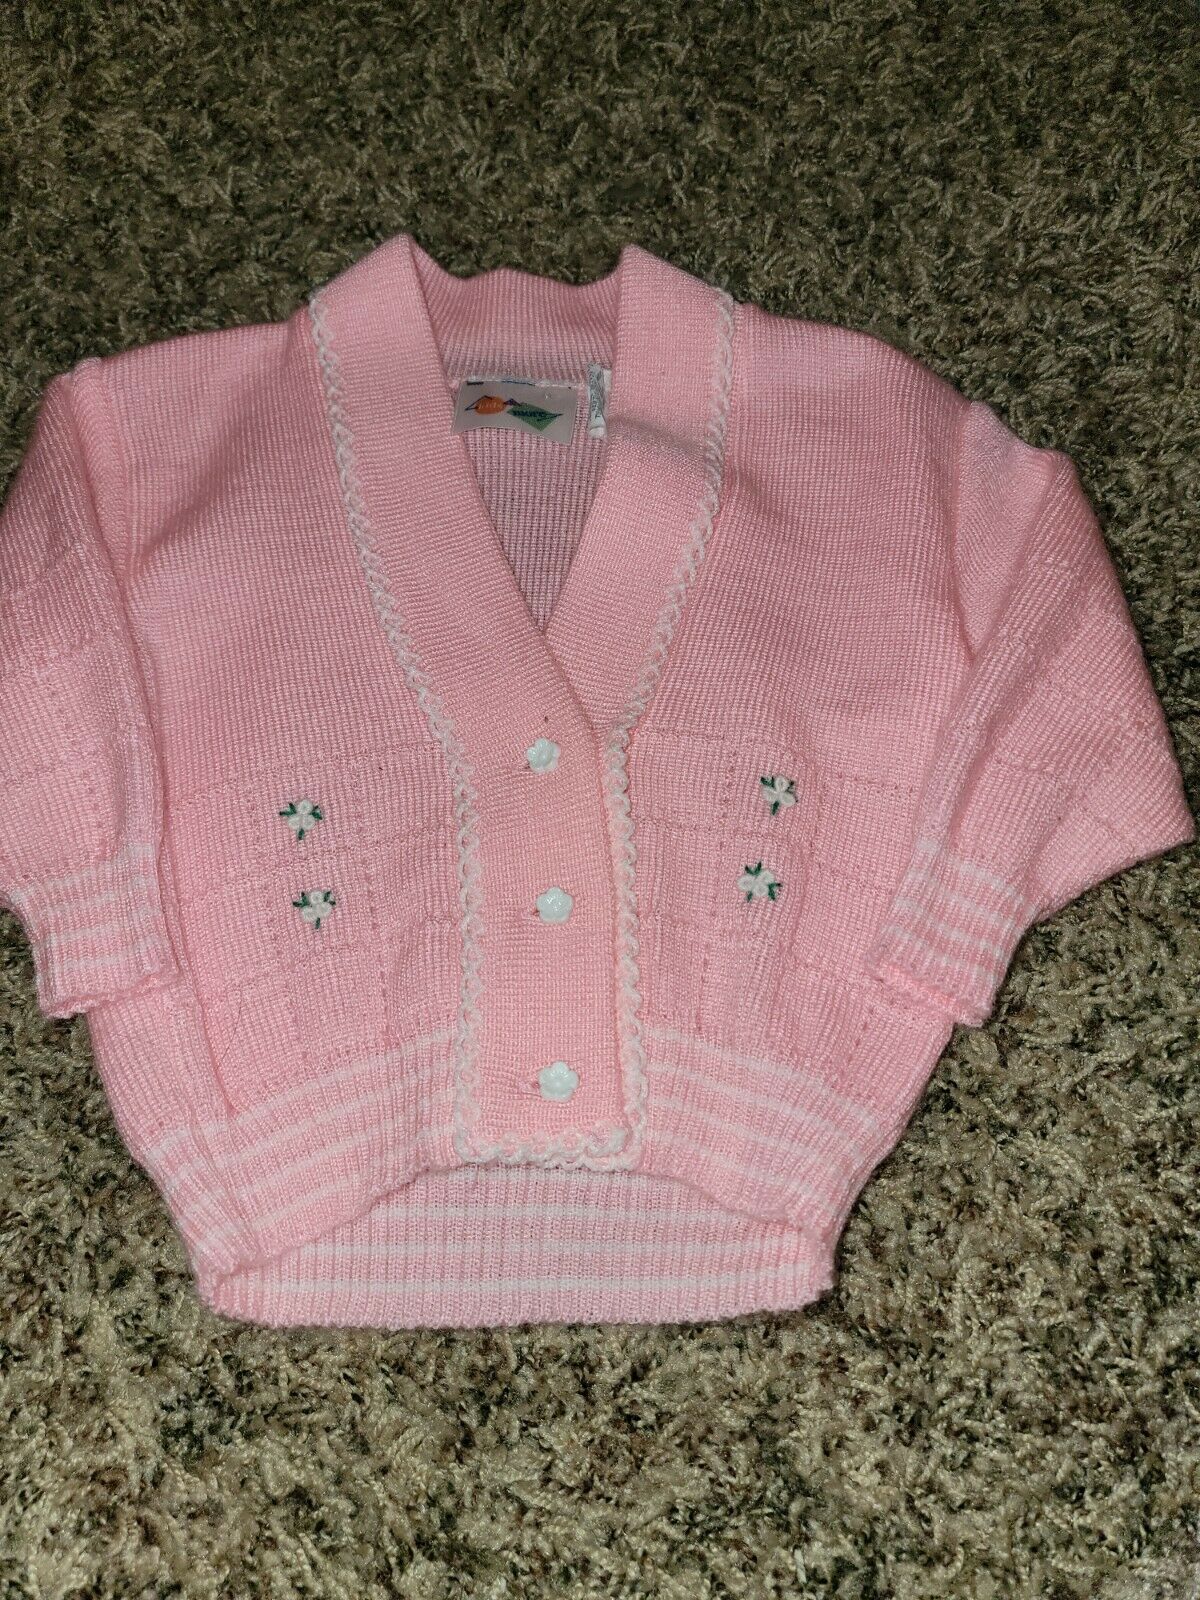 Vintage 50s Style Bubble Gum Pink Cardigan Sweater Sz 12m